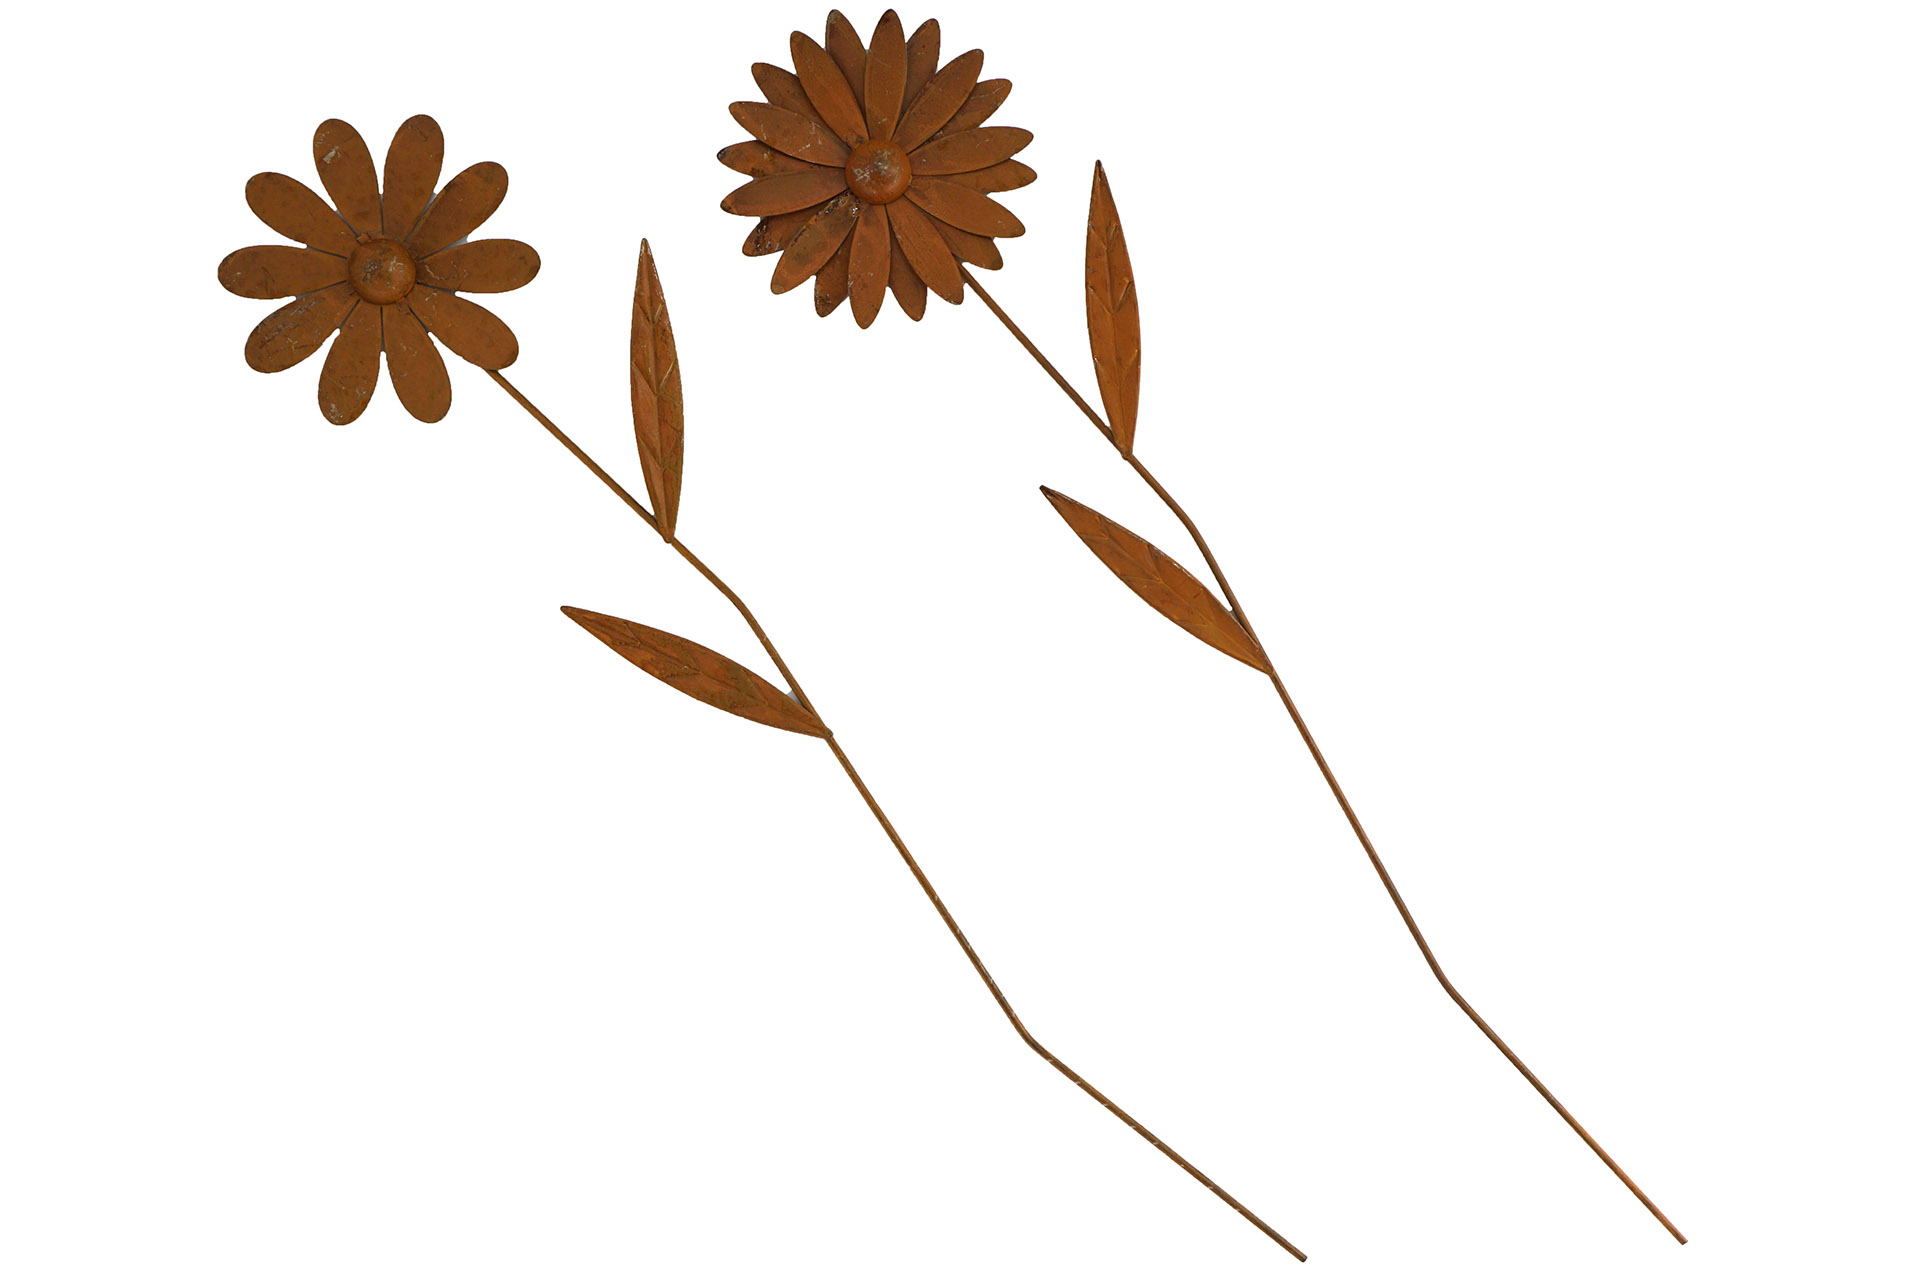 Gartenstecker "Blume" mit Blättern, 70x15x2cm, 2 Designs, Rostlook